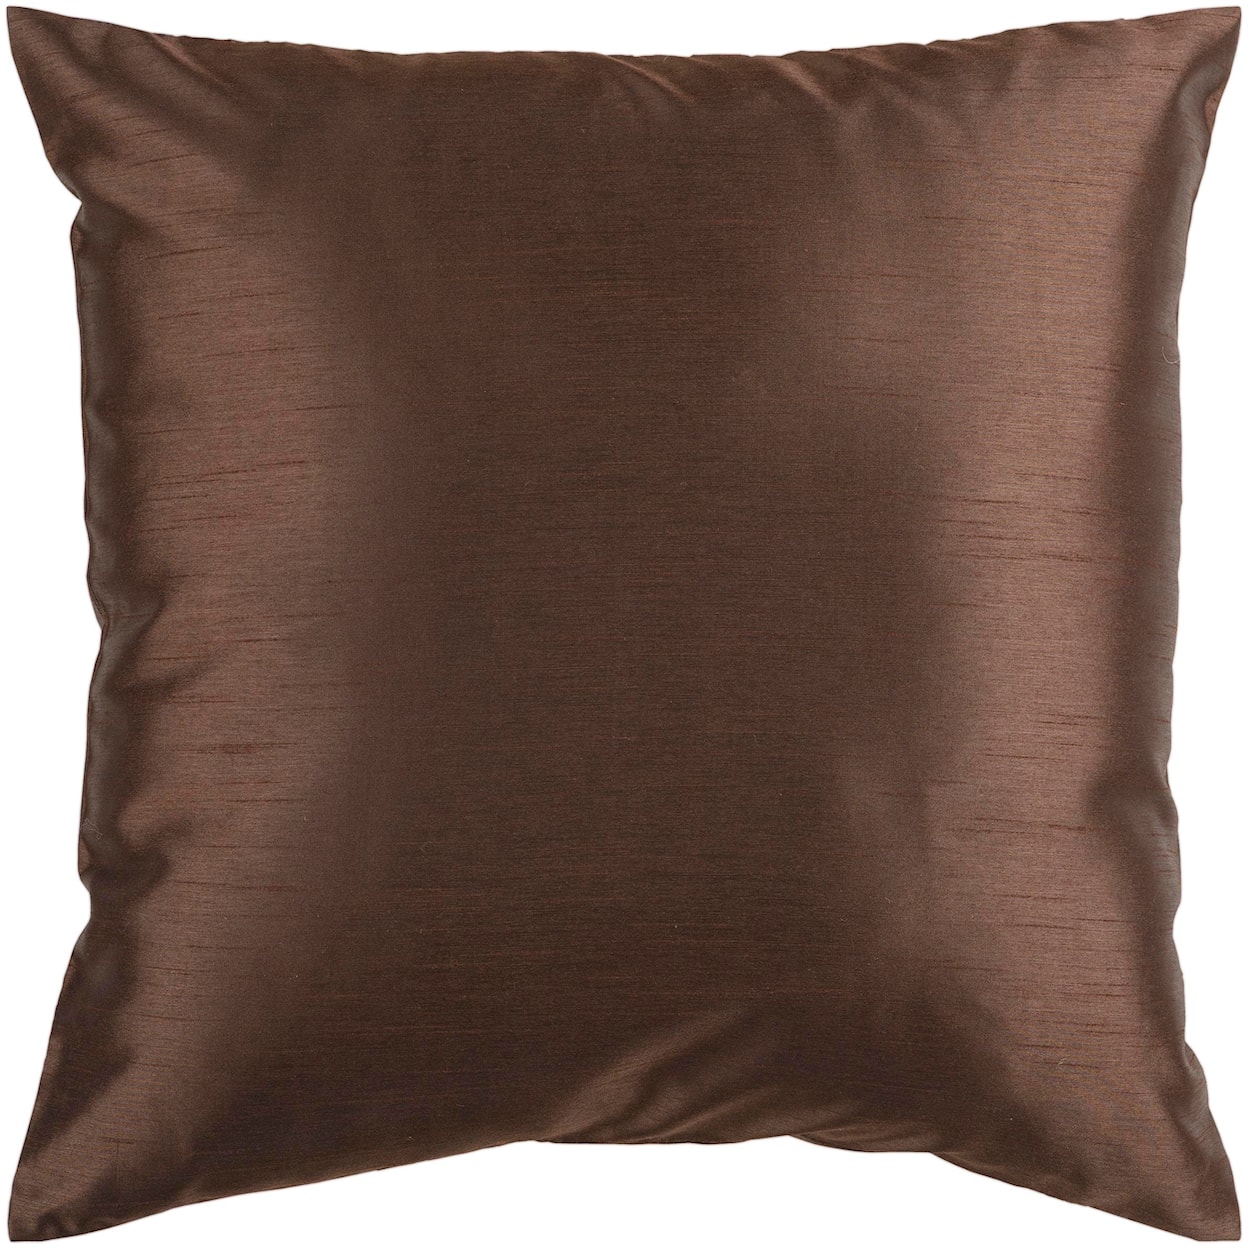 Surya Pillows 22" x 22" Pillow